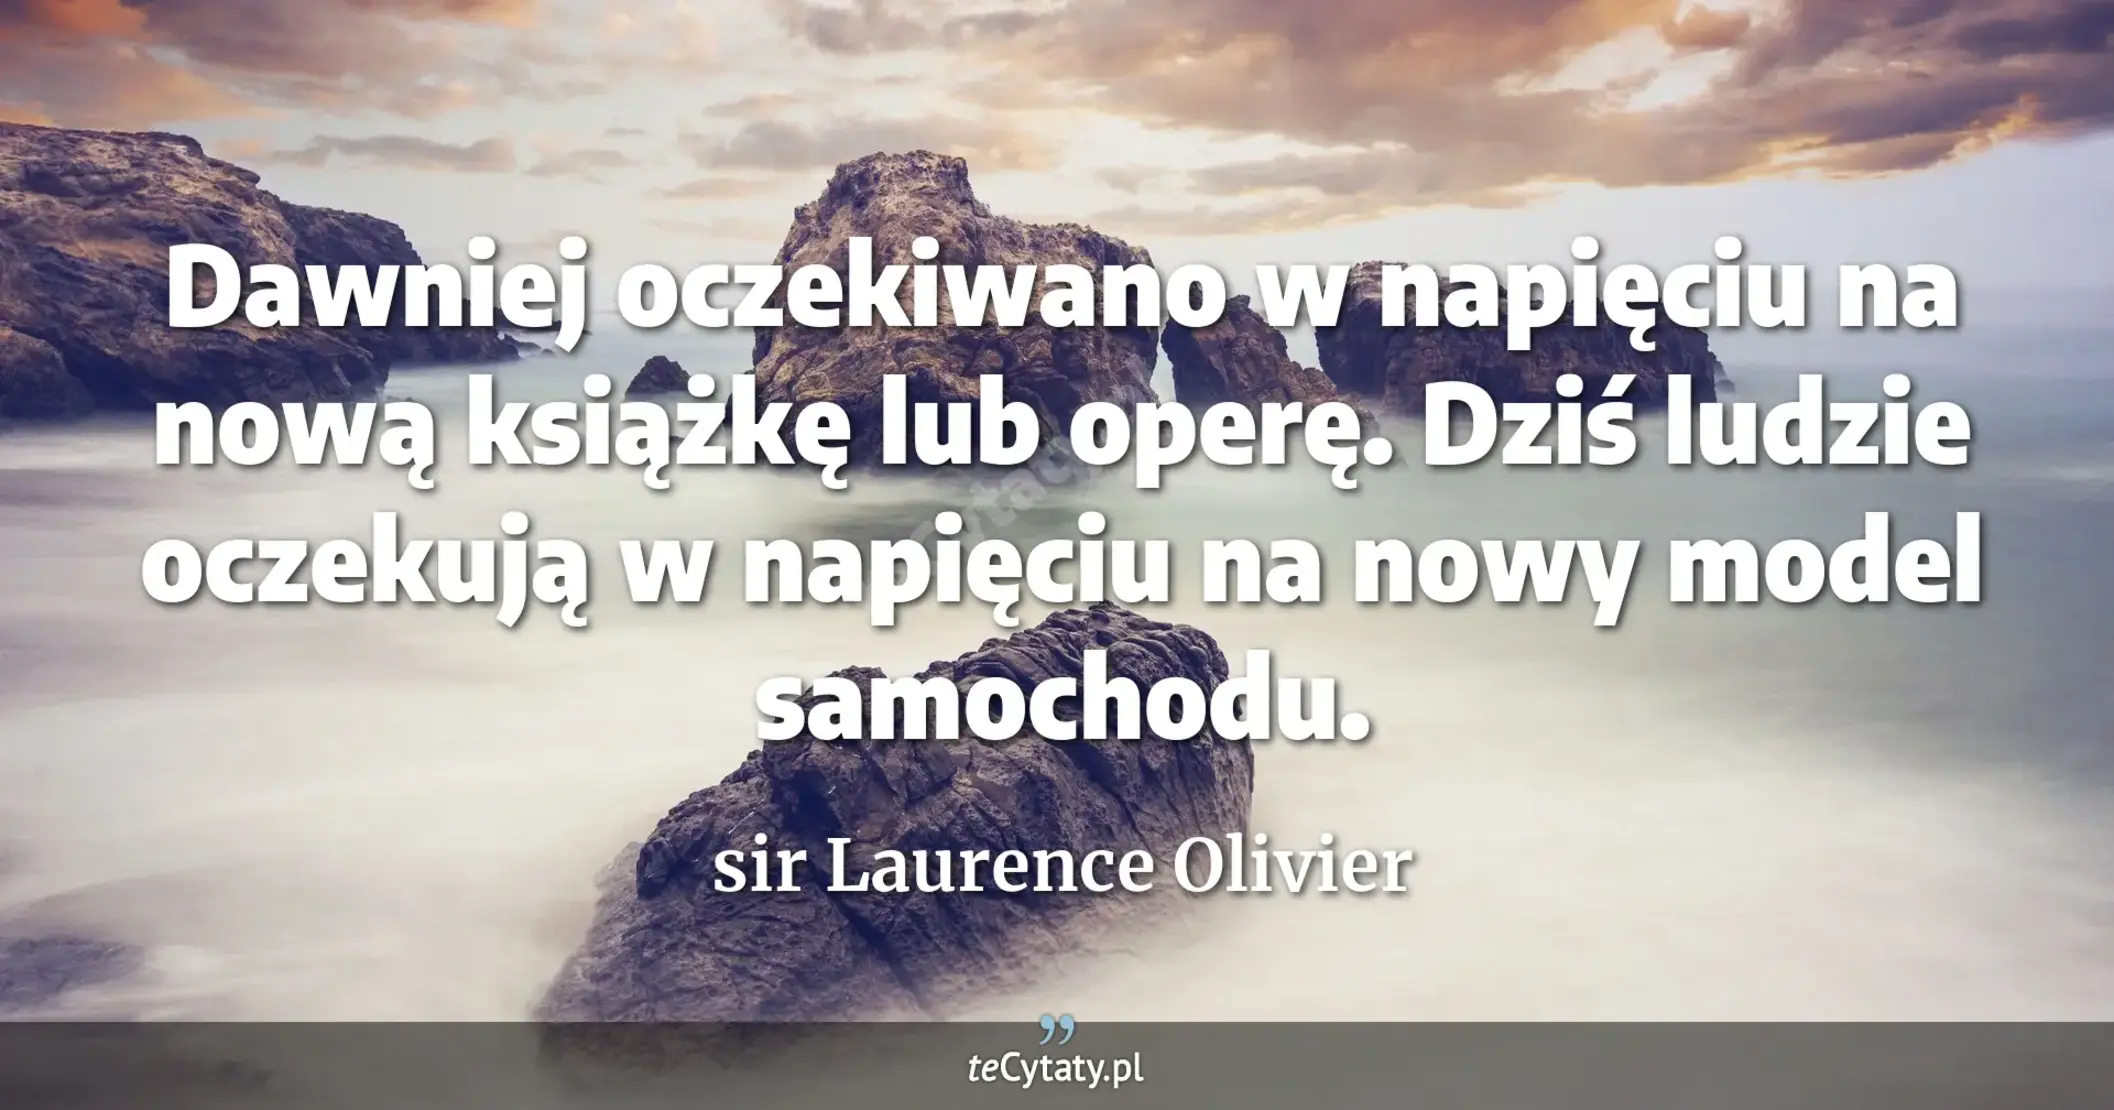 Dawniej oczekiwano w napięciu na nową książkę lub operę. Dziś ludzie oczekują w napięciu na nowy model samochodu. - sir Laurence Olivier